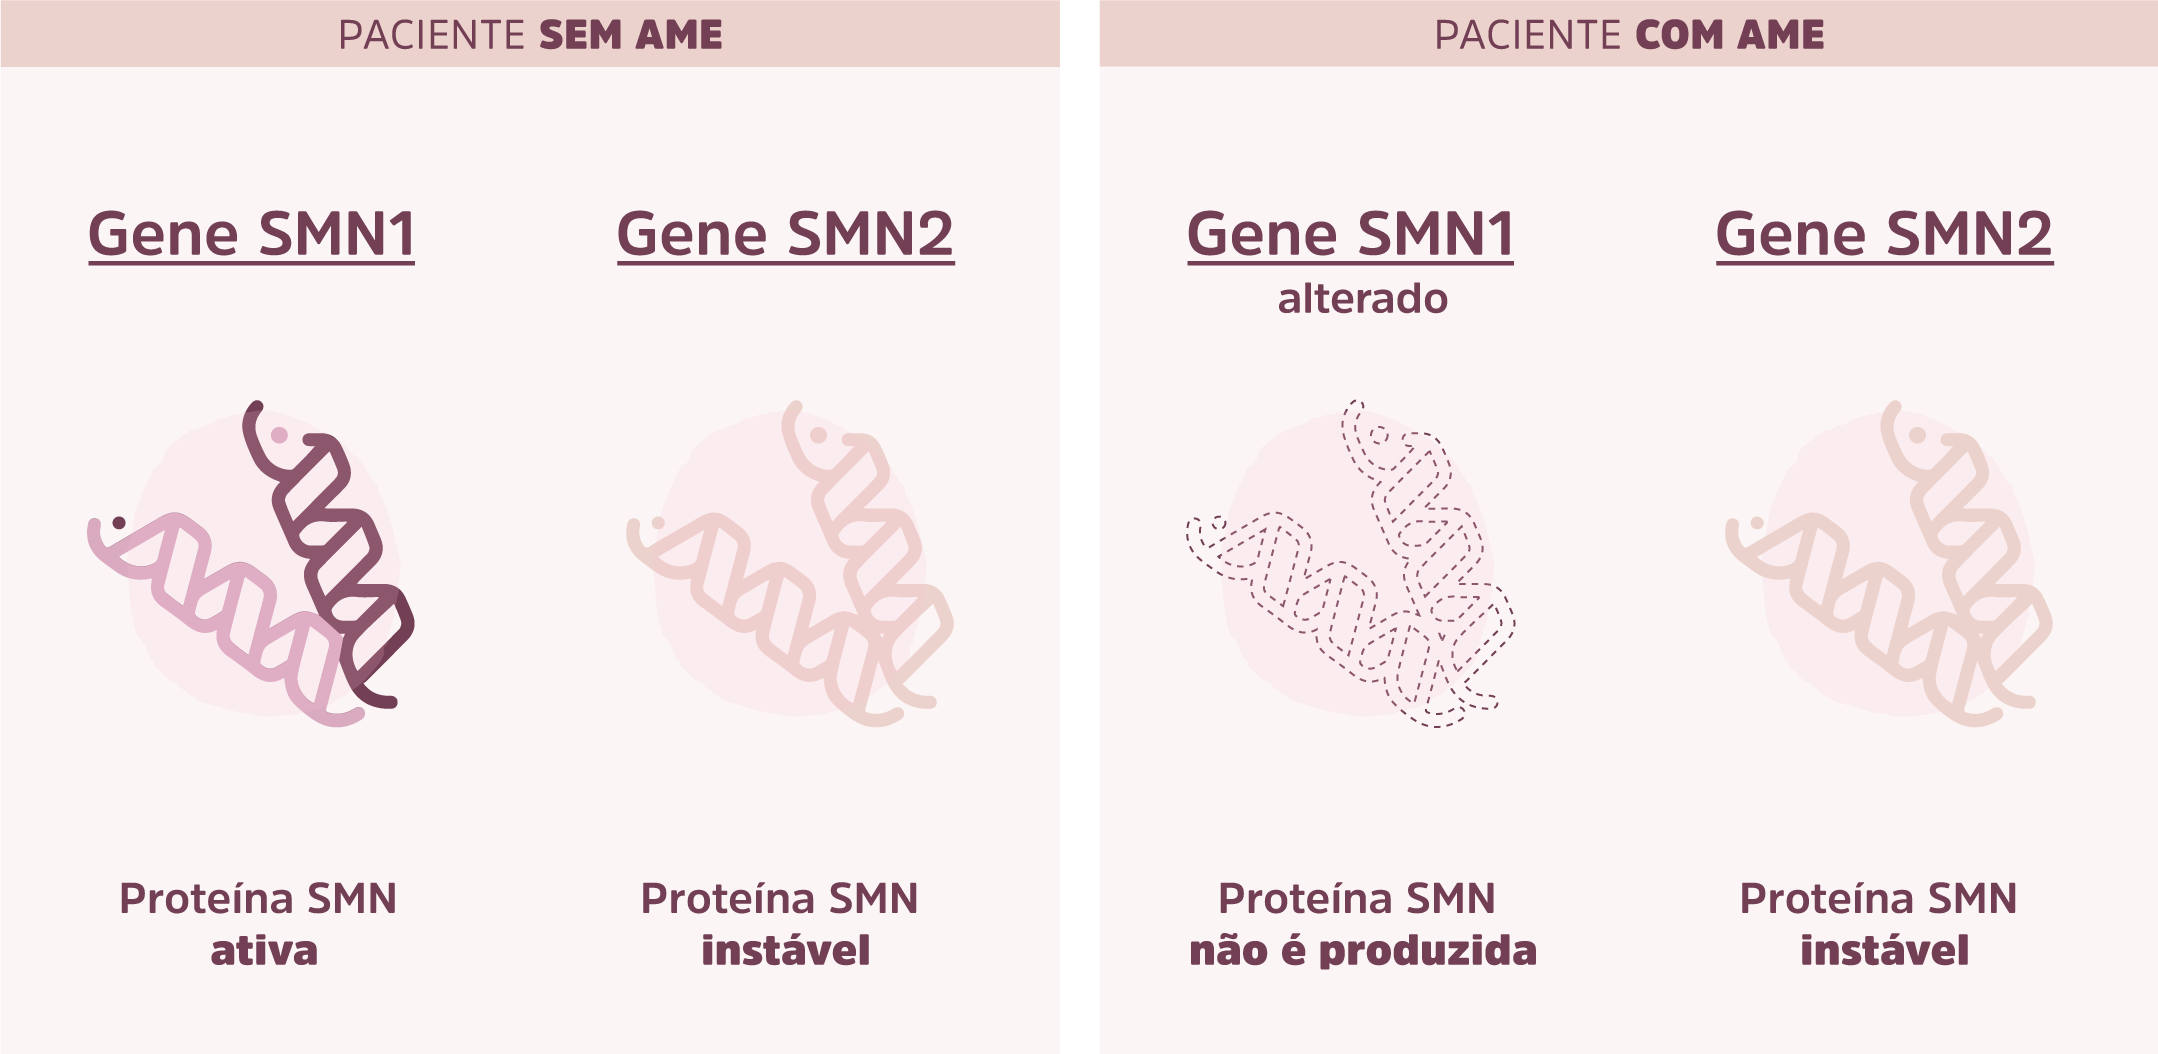 Figura 3: Ilustração representando os genes SMN1 e SMN2 e a proteína SMN em pessoas com e sem AME 5q.